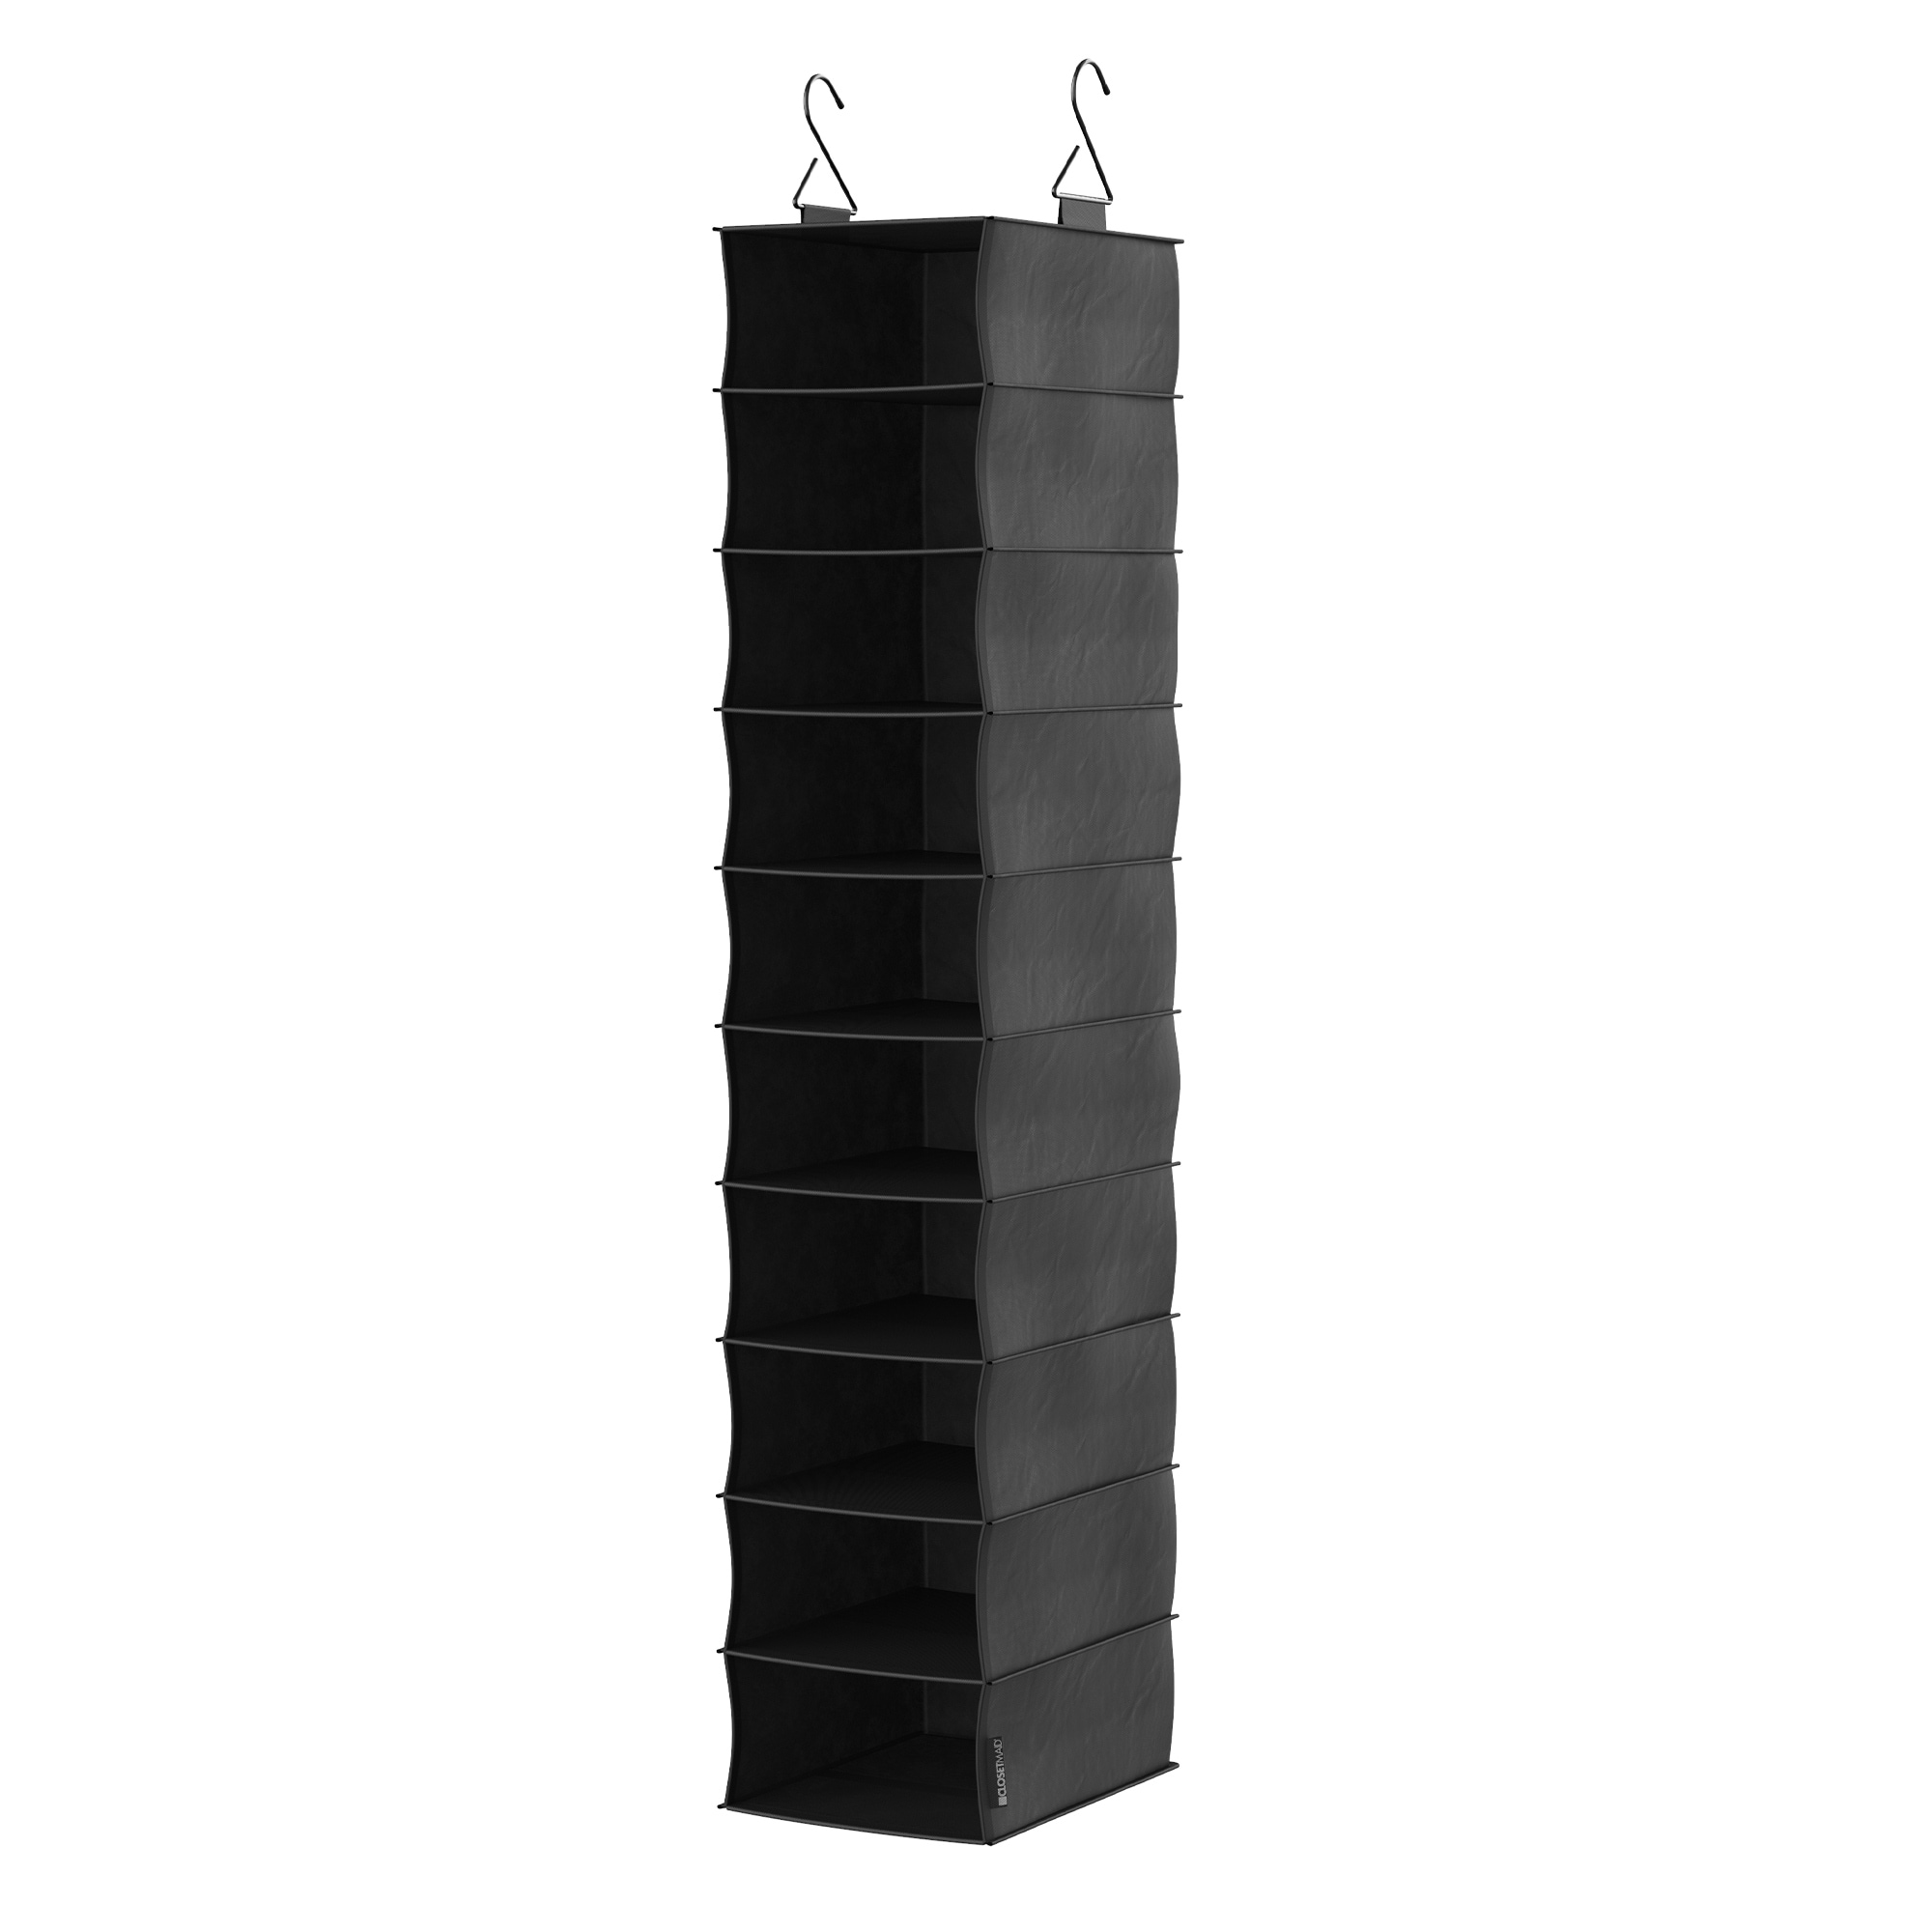 ClosetMaid Capsule 3-Cube Hanging Fabric Closet Organizer - Black